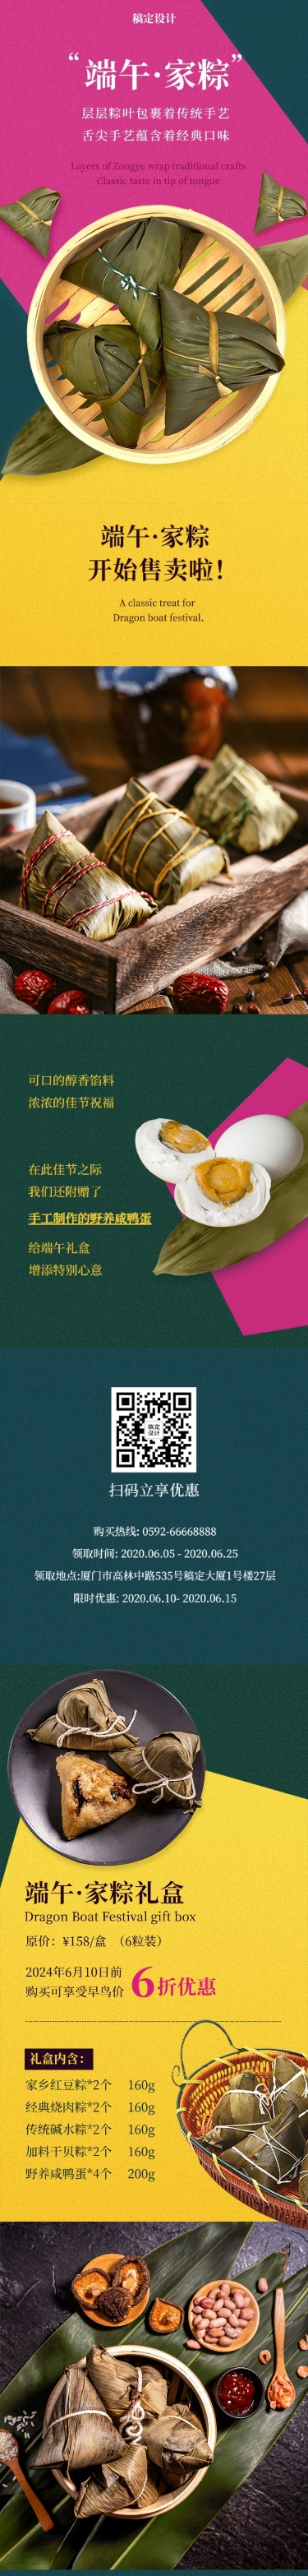 餐饮美食端午节粽子产品营销简约文章长图预览效果